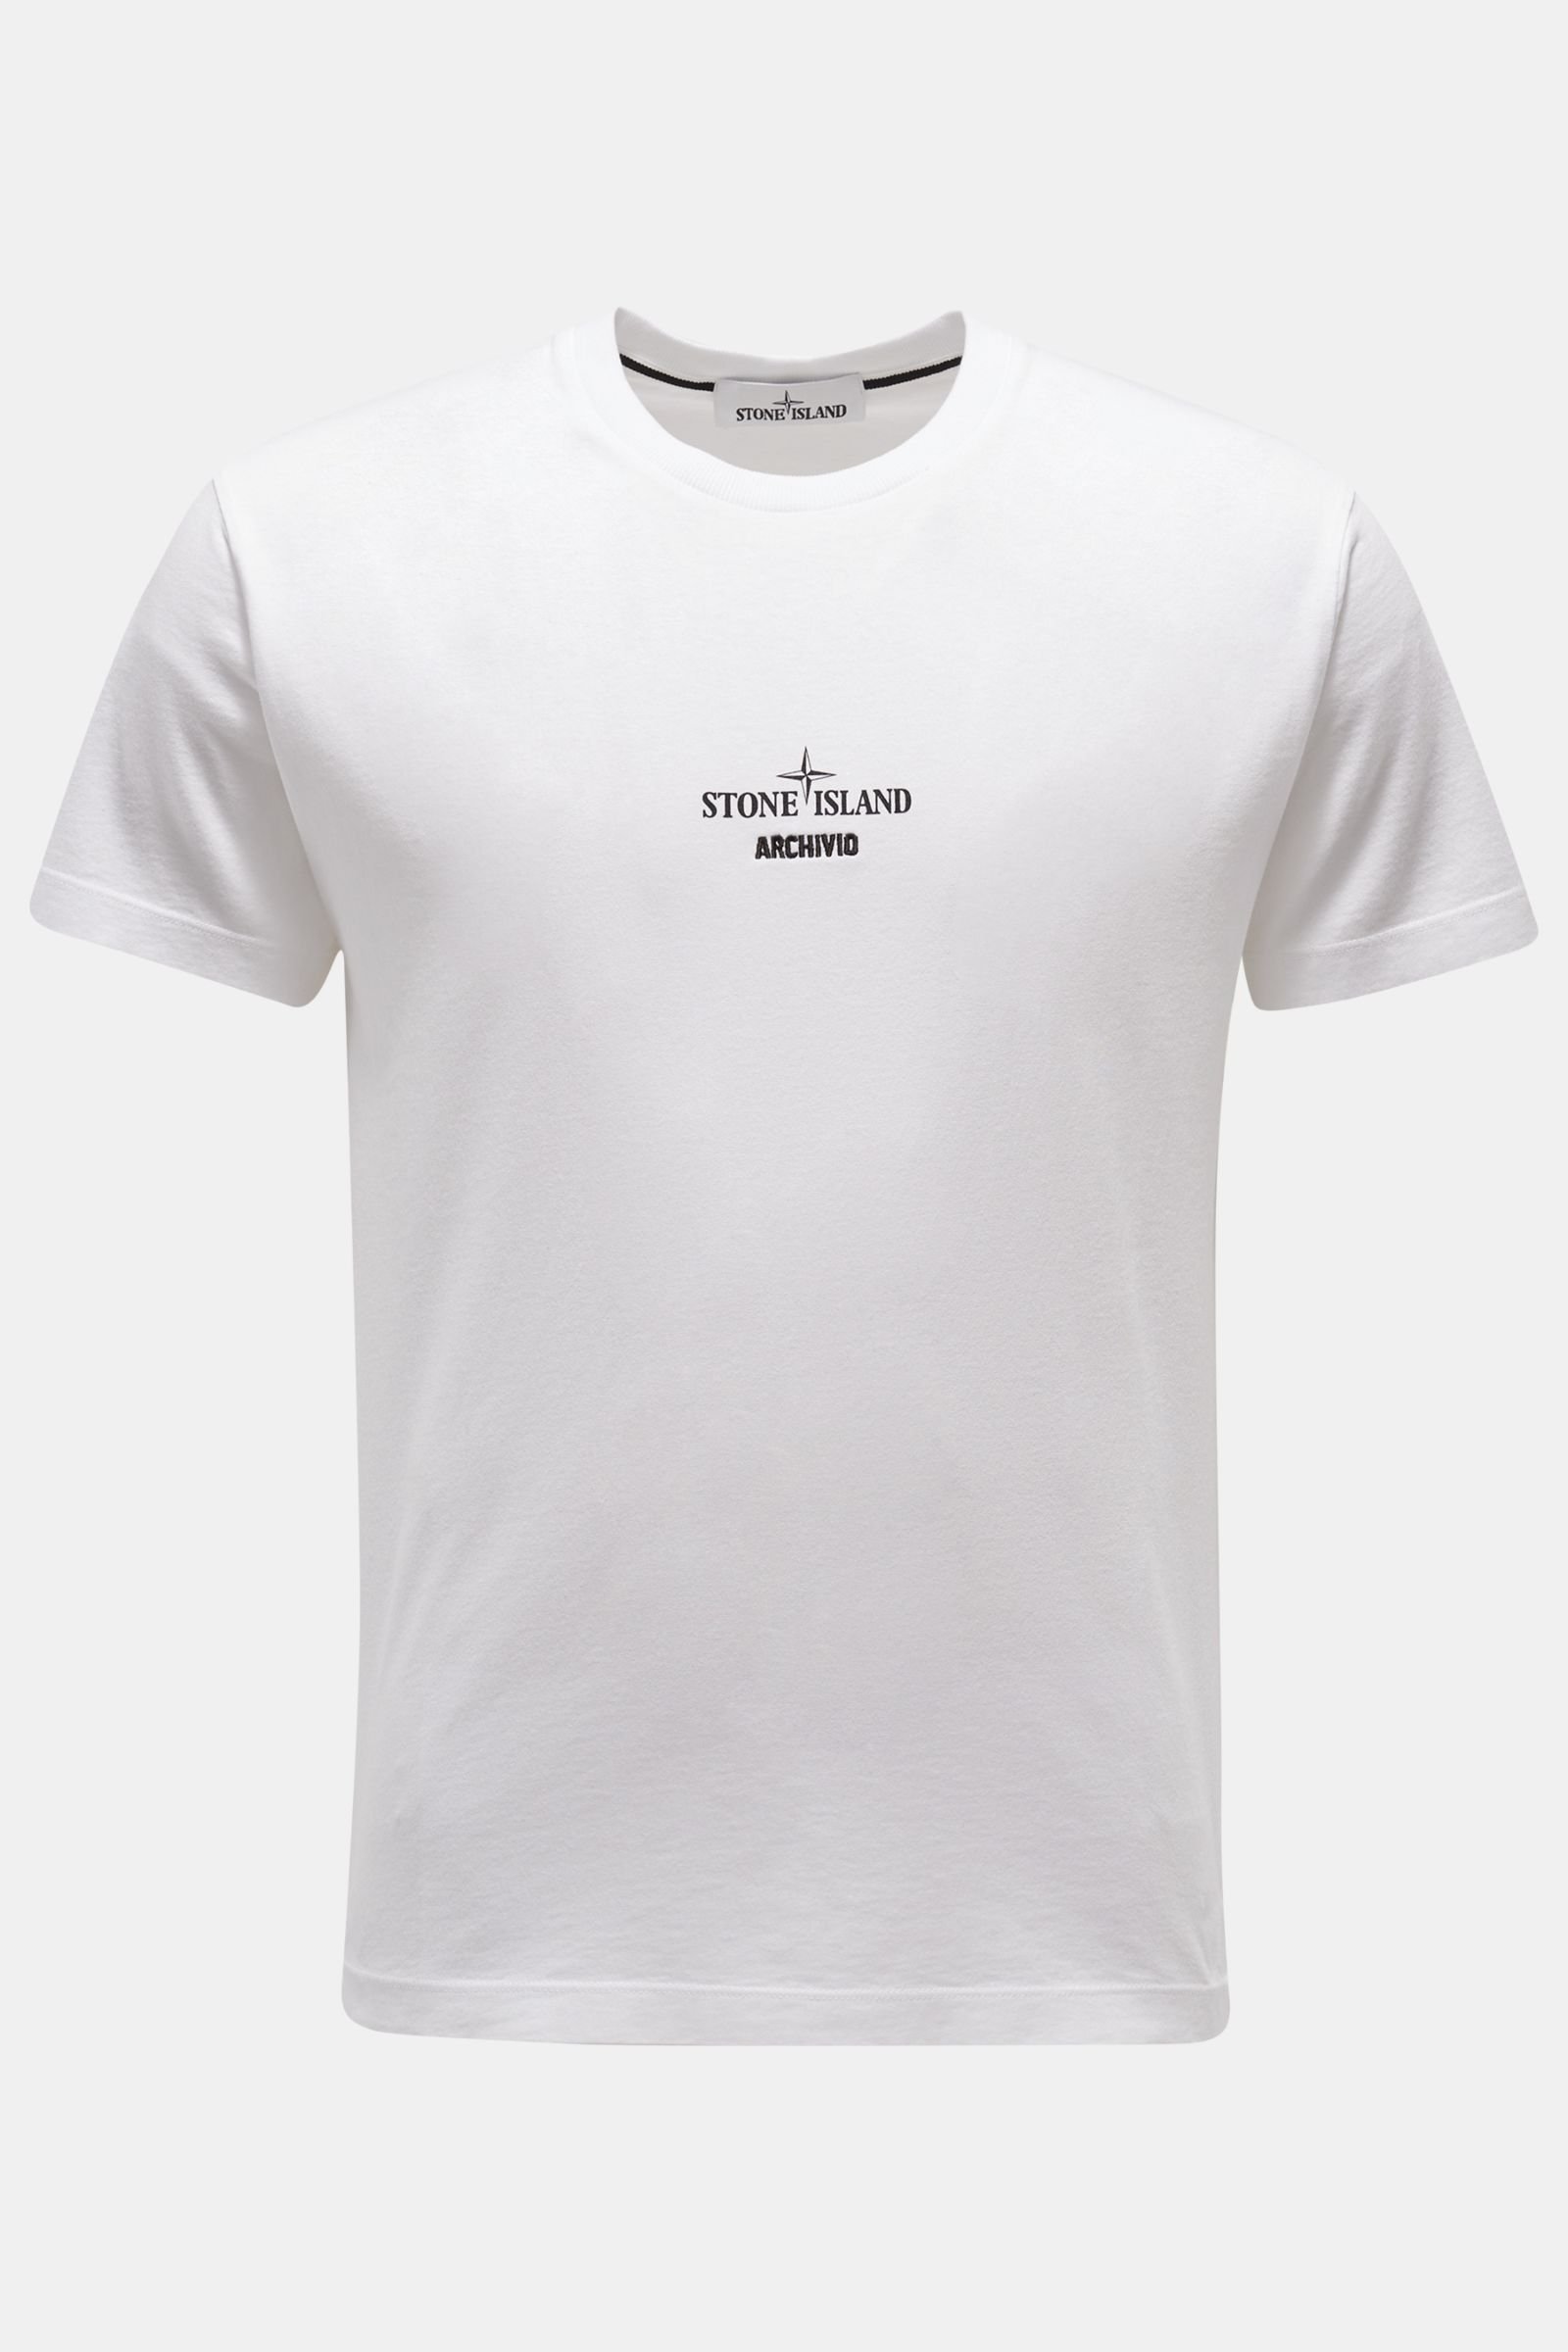 STONE ISLAND crew neck T-shirt 'Archivio' white | BRAUN Hamburg